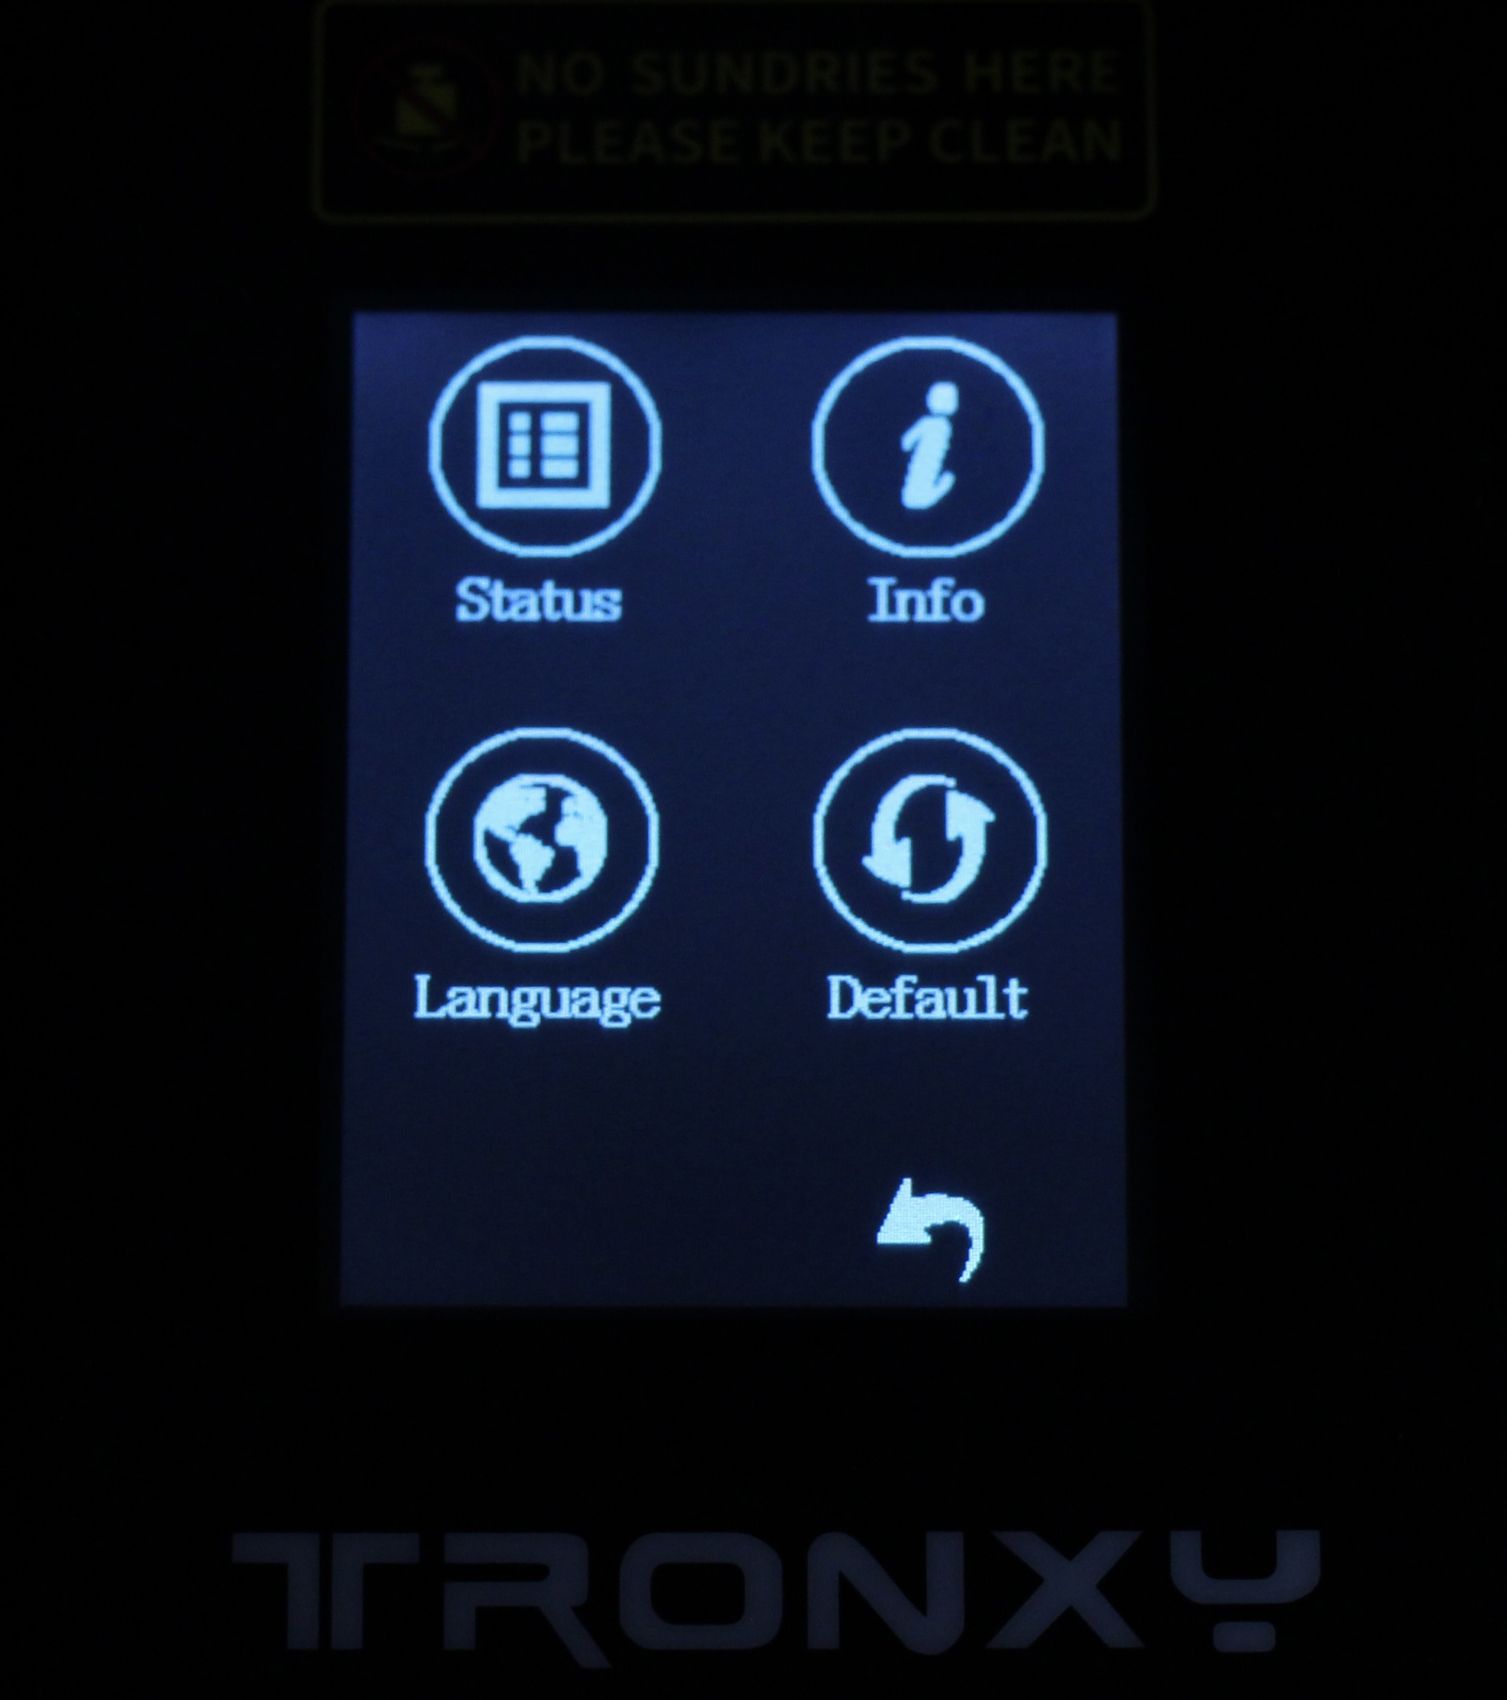 TRONXY CRUX 1 Screen Interface5 | TRONXY CRUX 1 Review